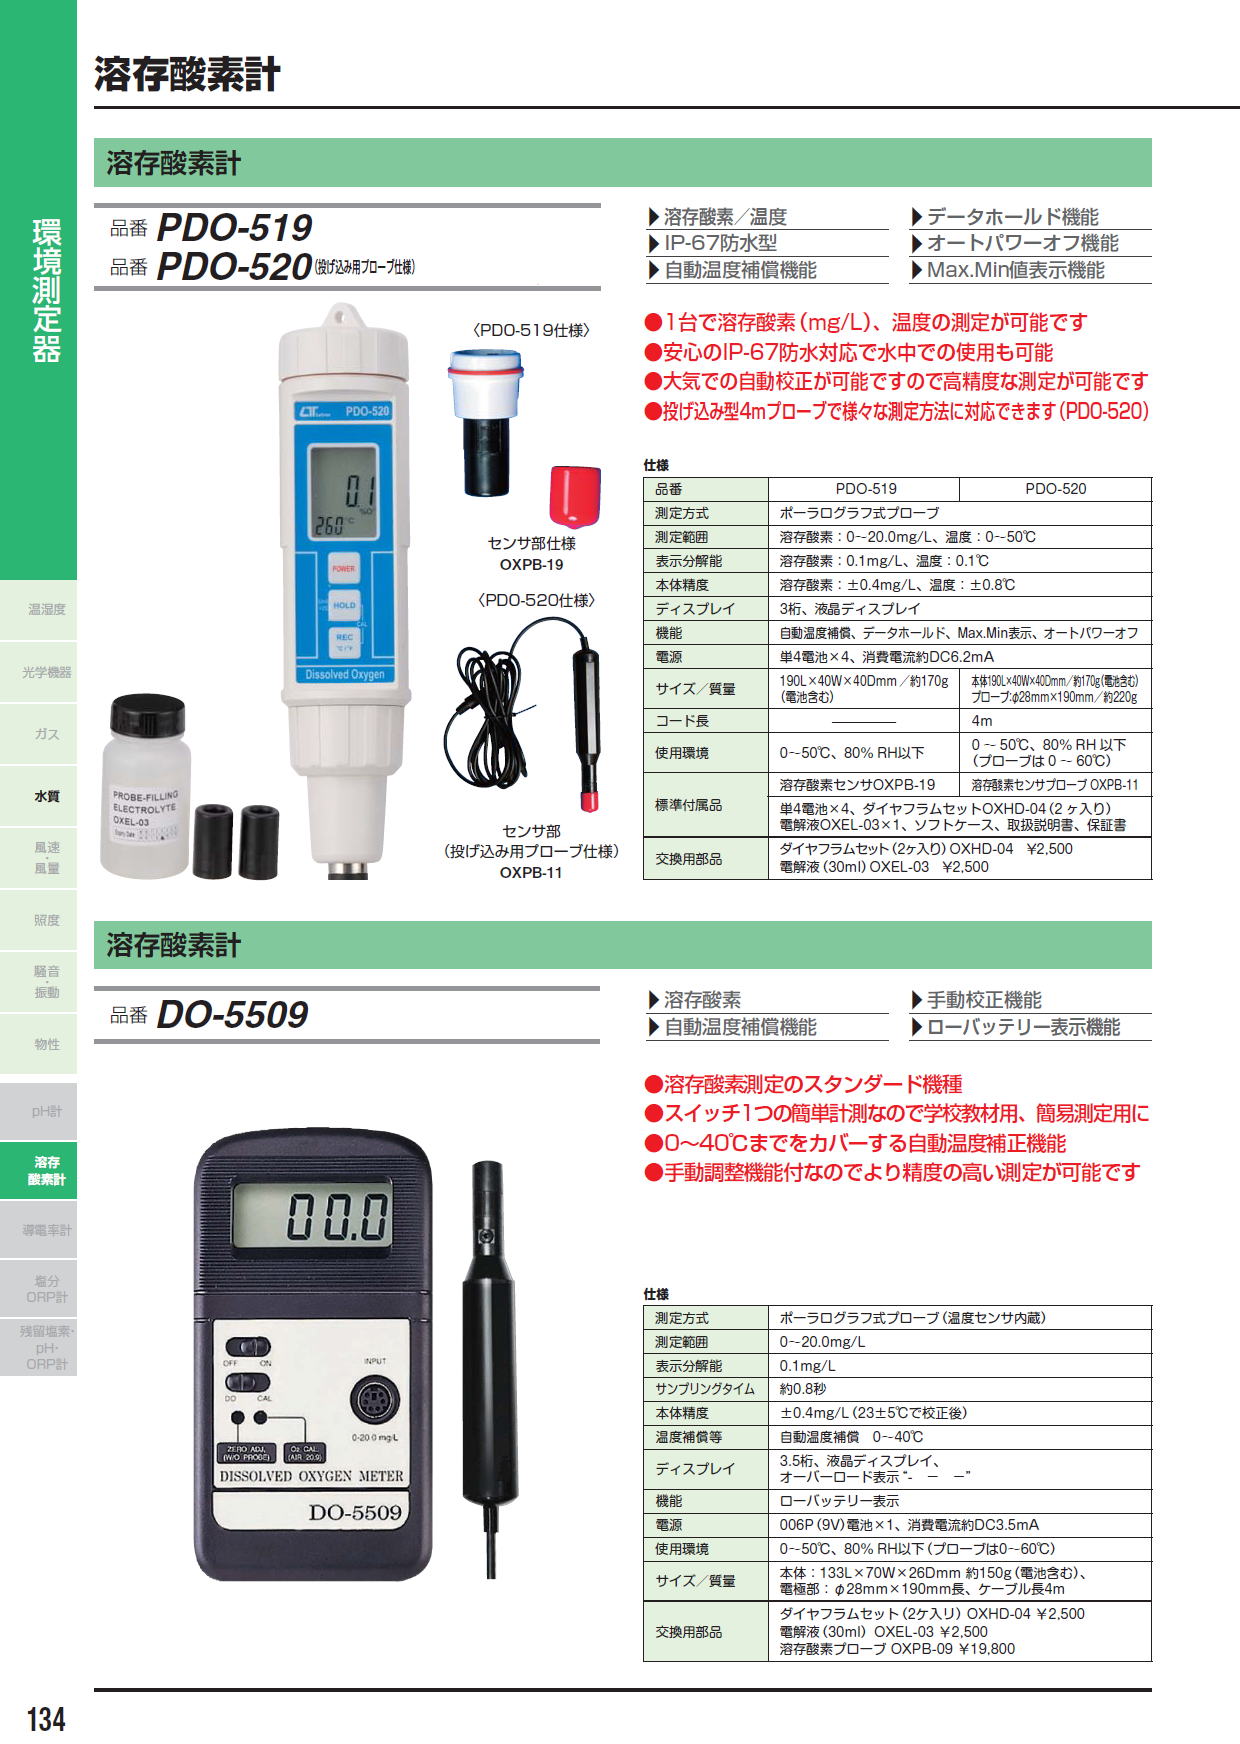 溶存酸素計 PDO-519 / PDO-520（投げ込み用プローブ仕様） / 溶存酸素計 DO-5509